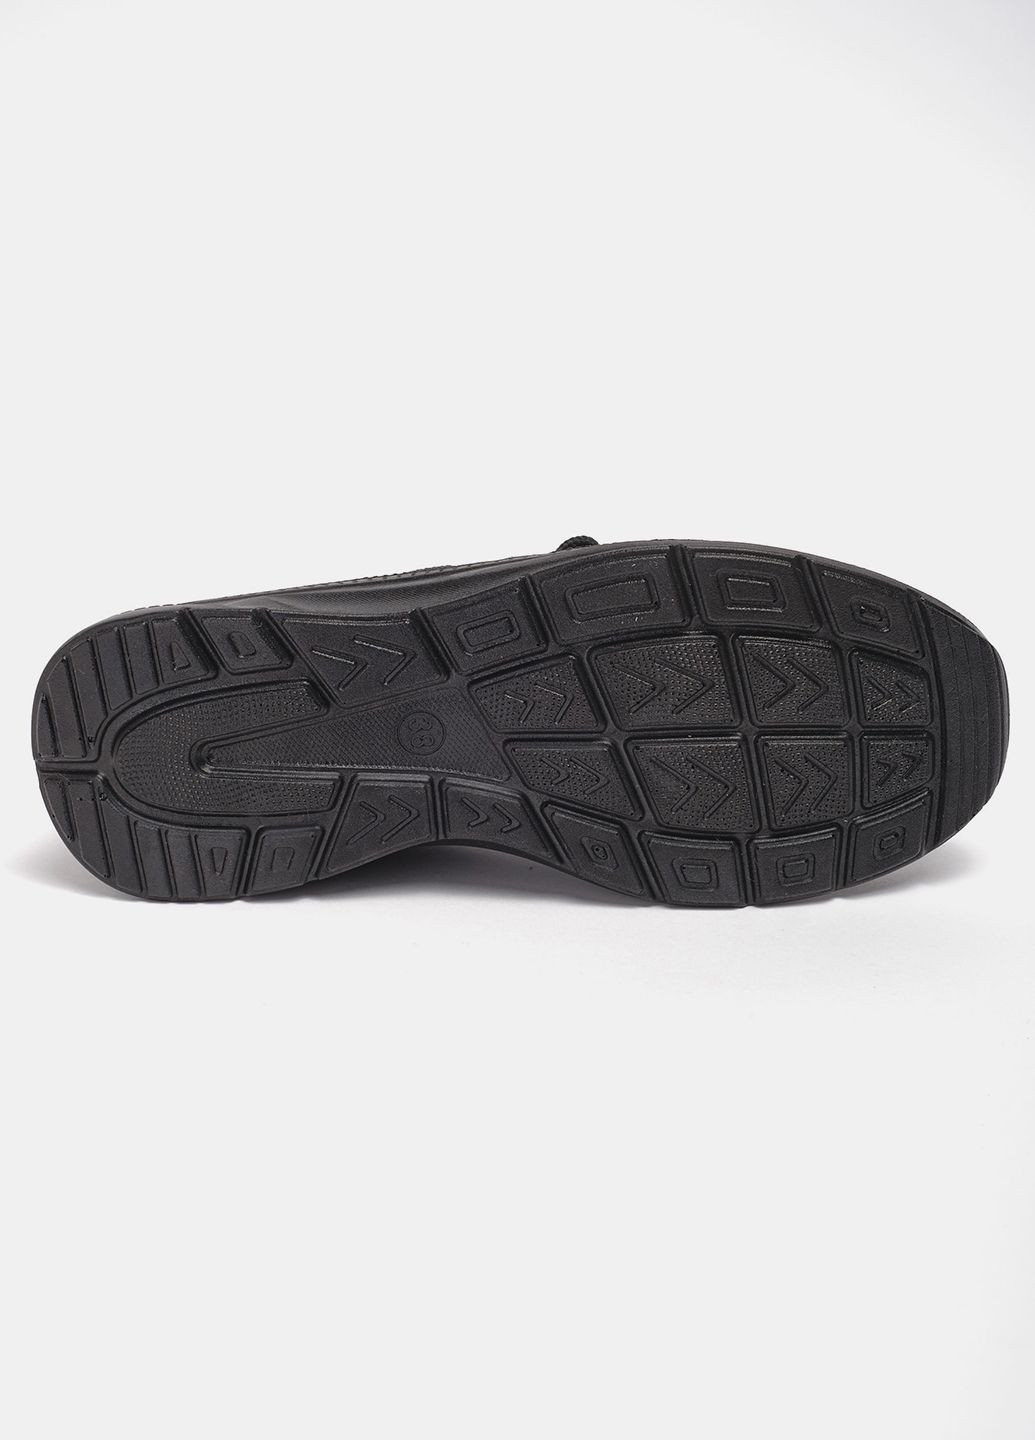 Черные летние кроссовки мода l08-1 текстиль черный норма 342820 Power